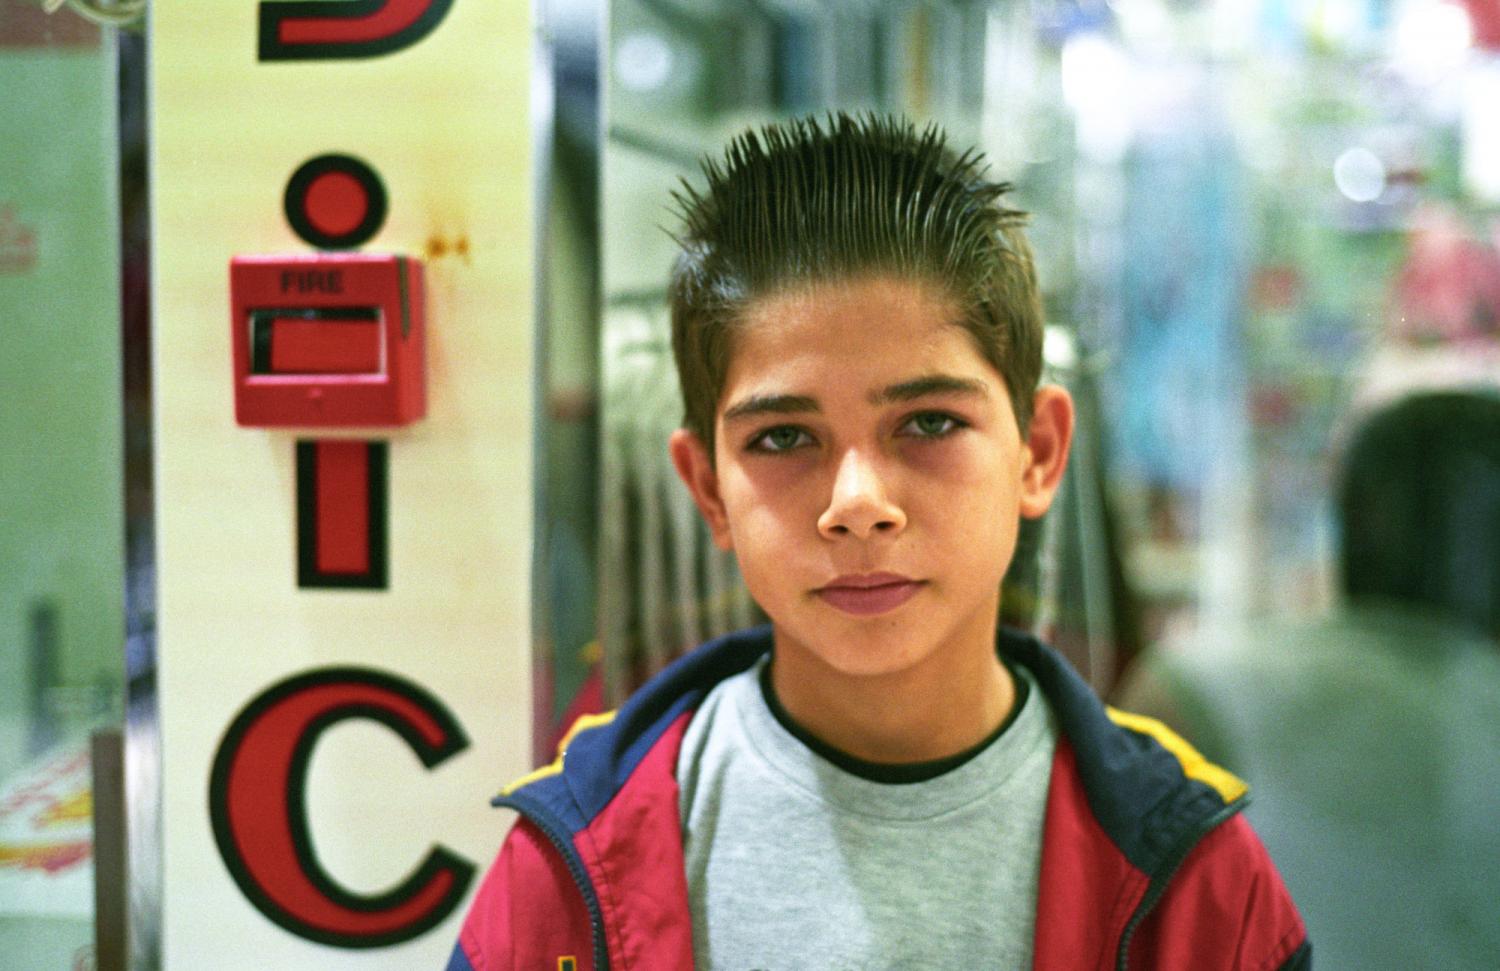 Un garçon aux cheveux enduits de gel dans un centre commercial. Bandar-e-Abbas, Iran, septembre 2006.